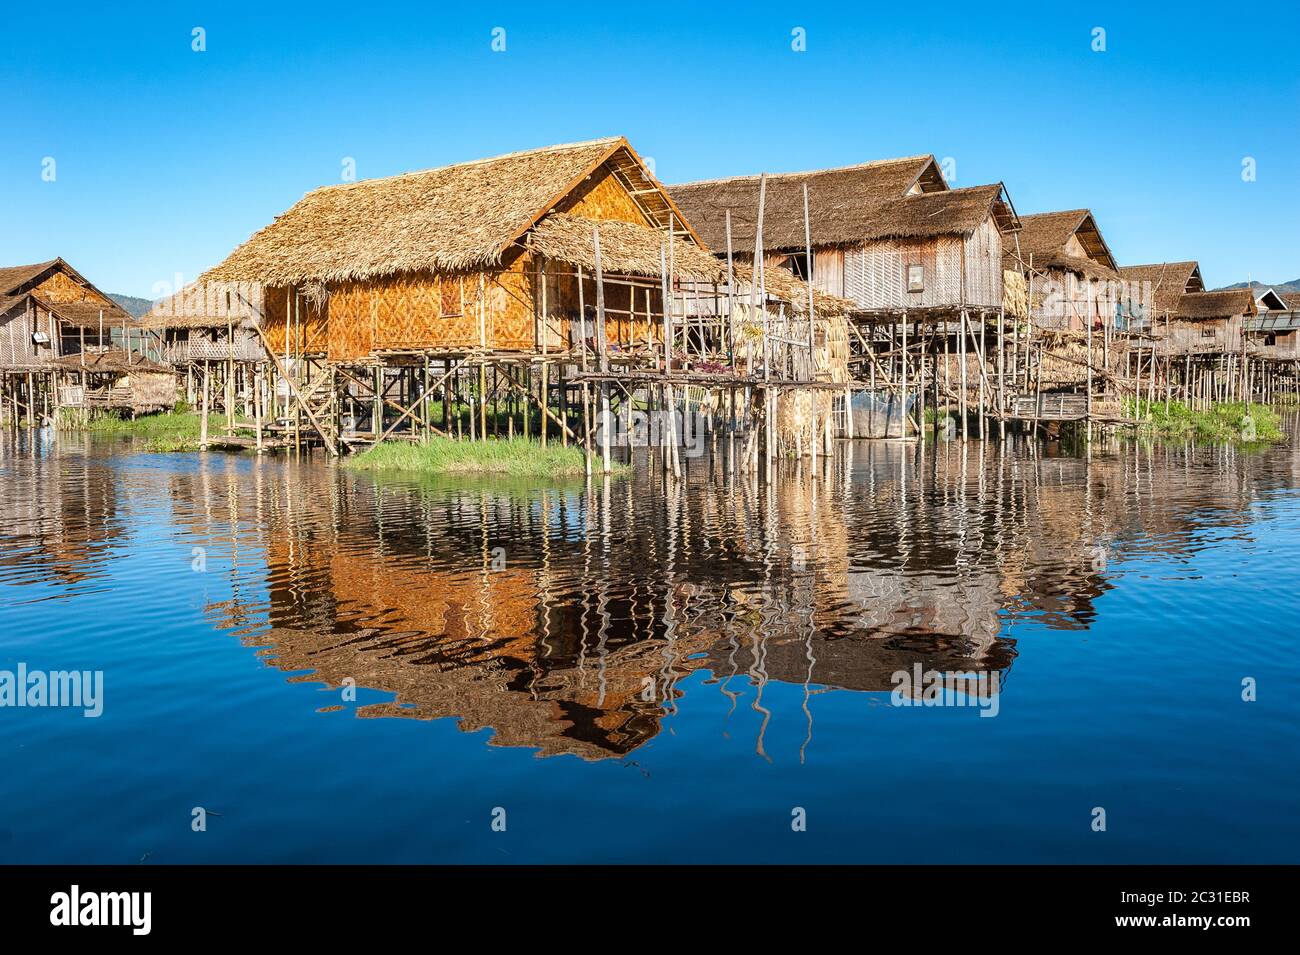 Floating village at Inle Lake, Myanmar Stock Photo